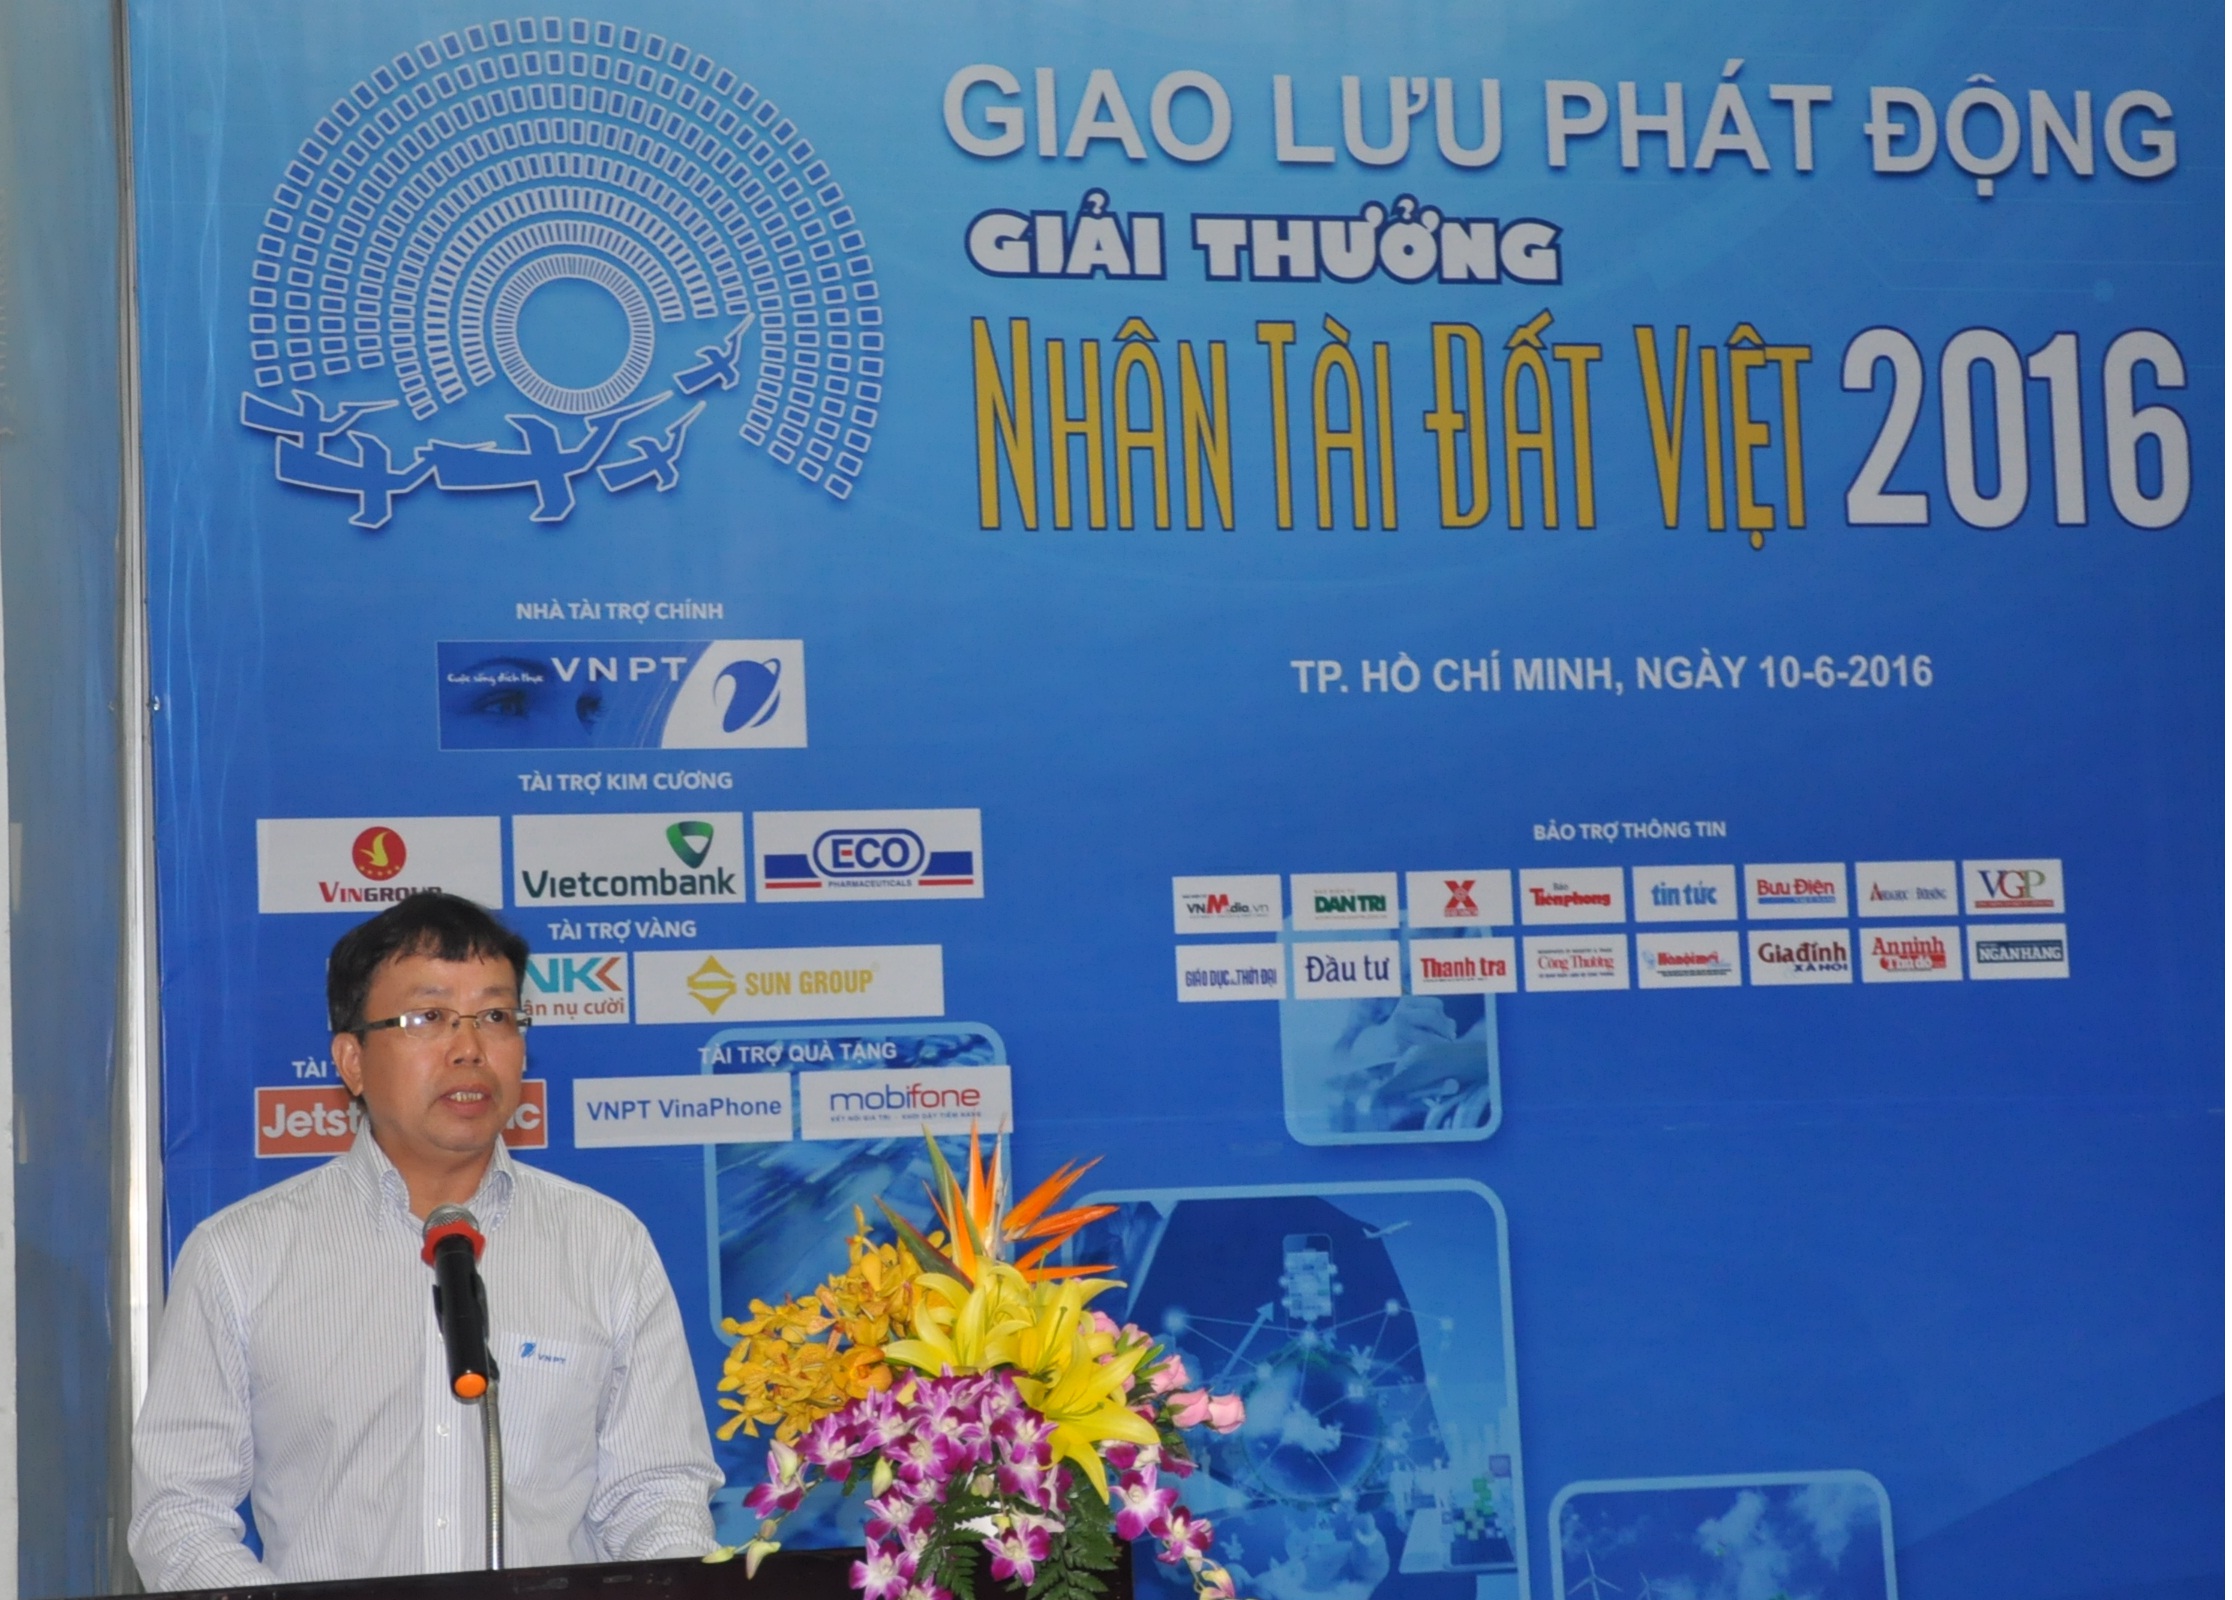 Phó Tổng Giám đốc Tập đoàn VNPT Nghiêm Phú Hoàn - đơn vị tài trợ chính và đồng hành với Giải thưởng Nhân tài Đất Việt suốt 12 năm nay phát biểu tại buổi giao lưu.